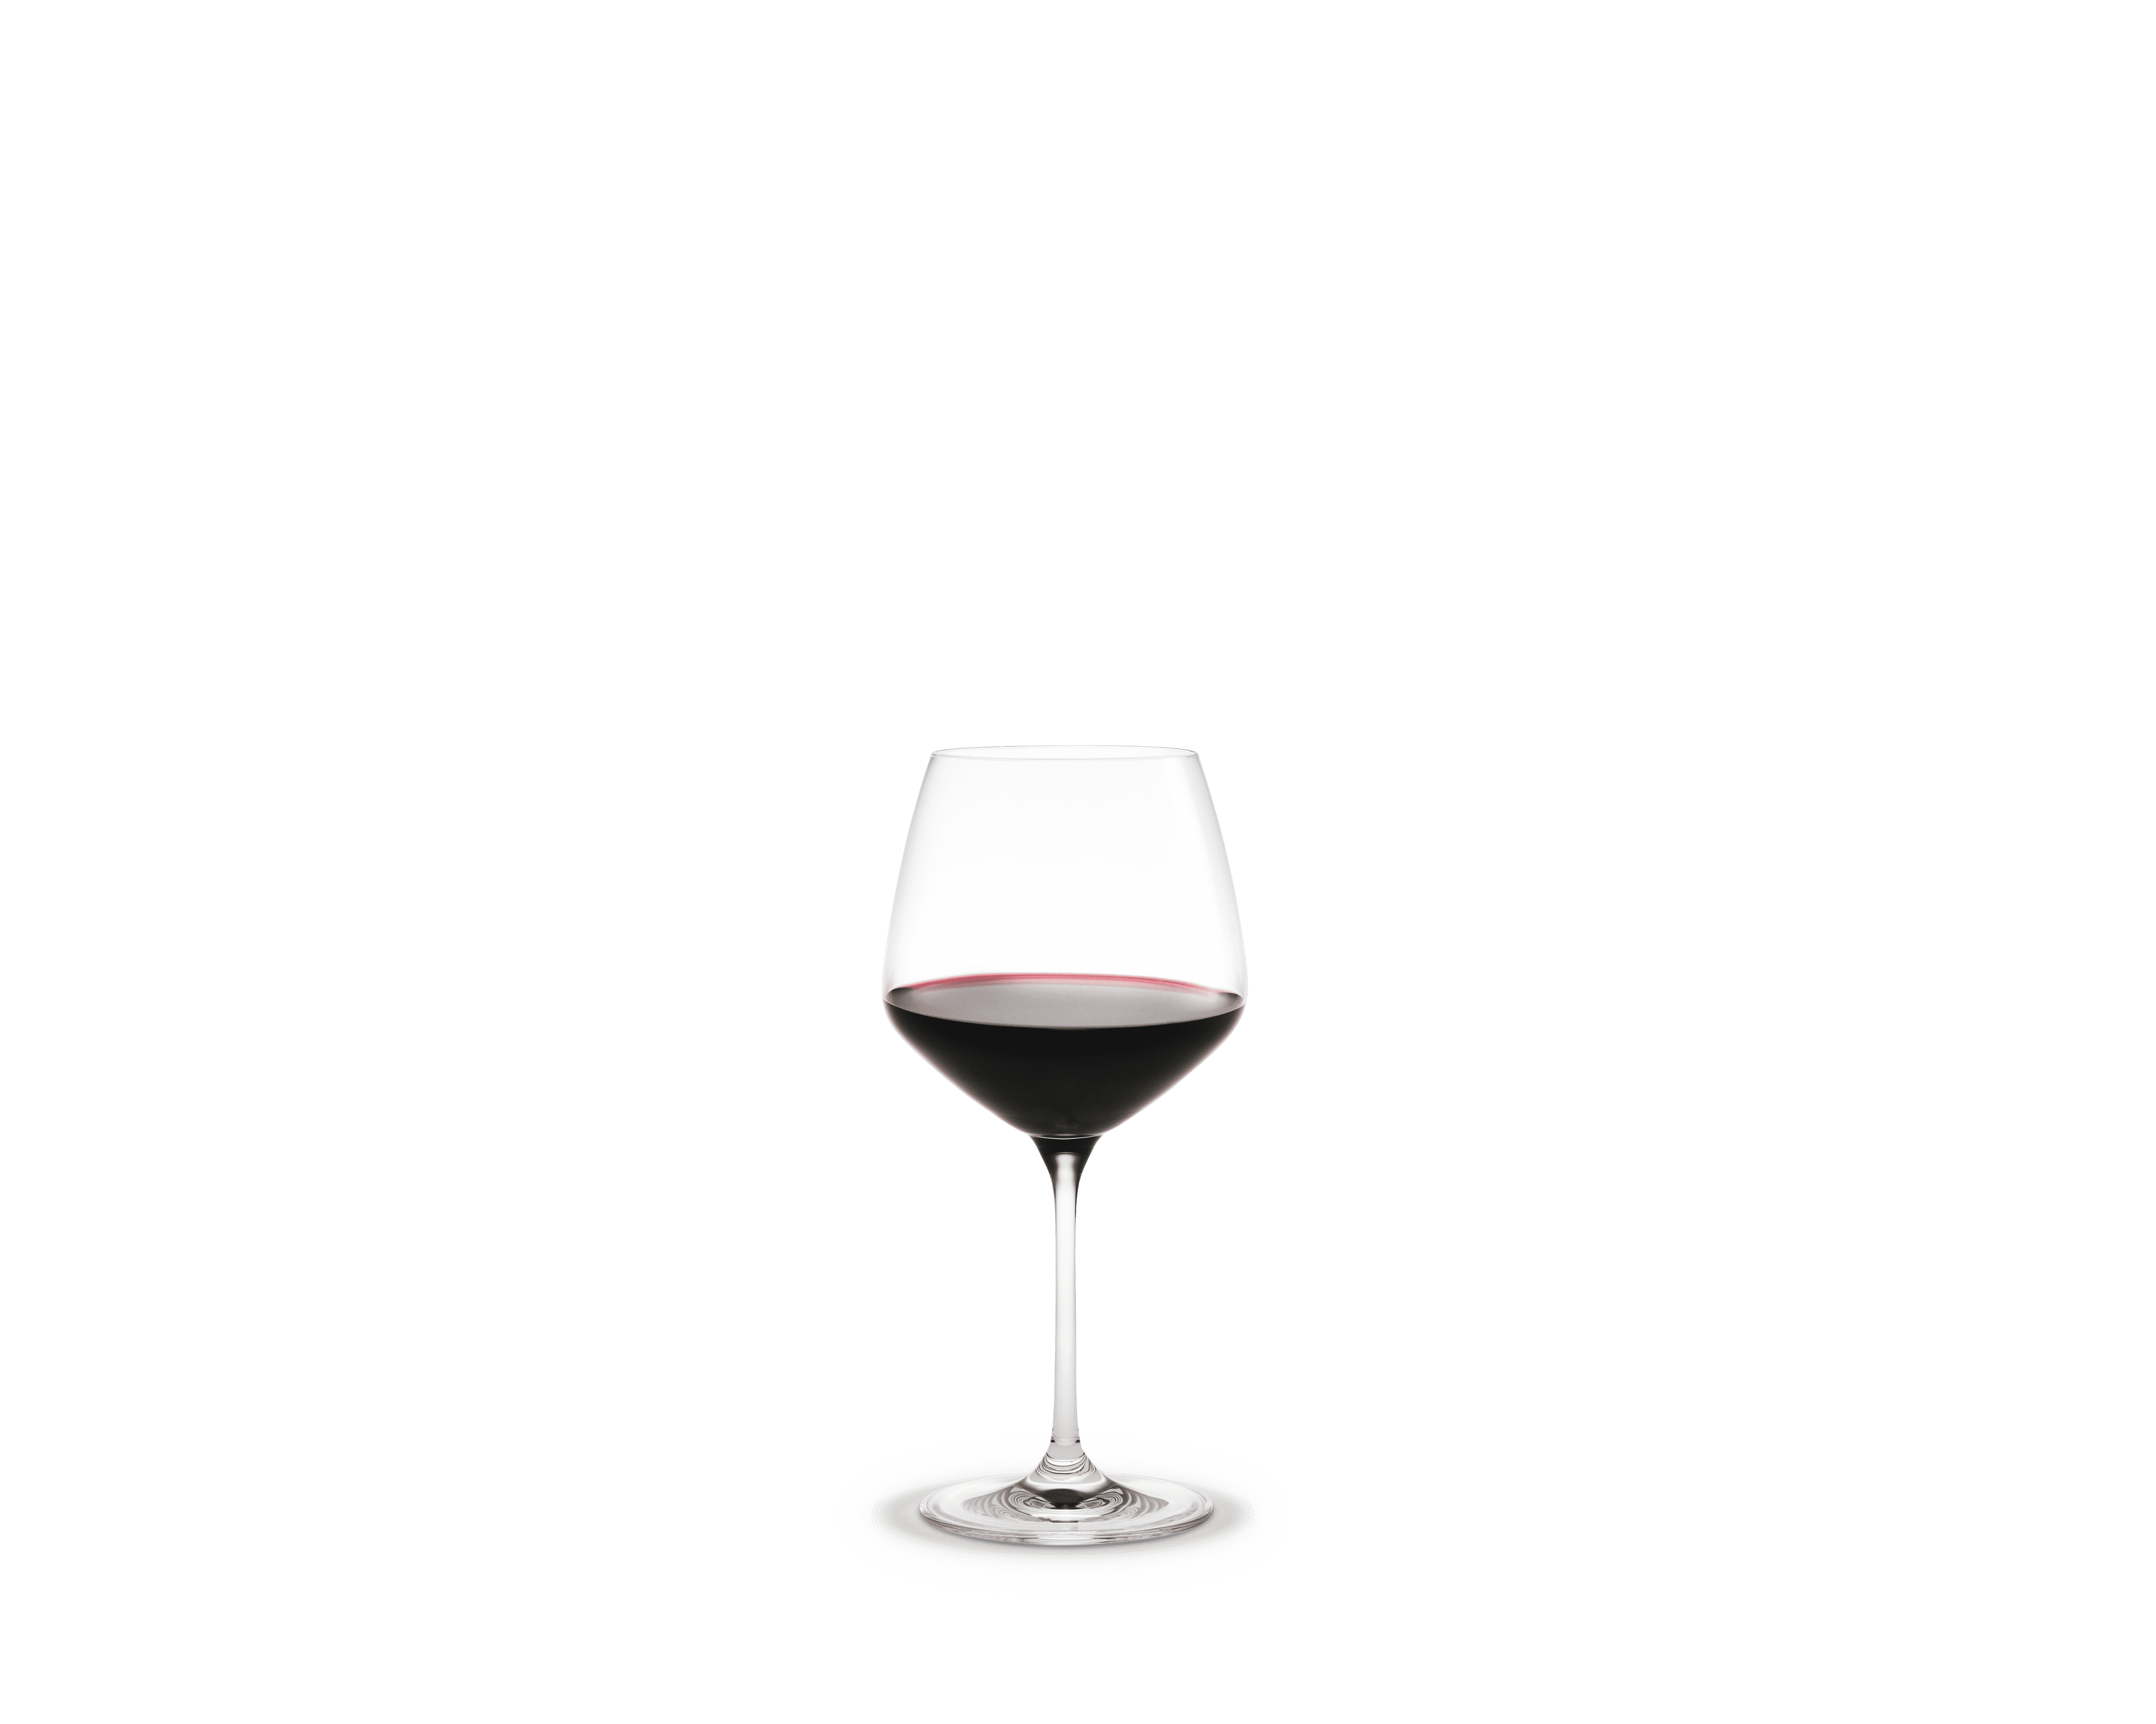 Burgundy Glass 59 cl 6 pcs.